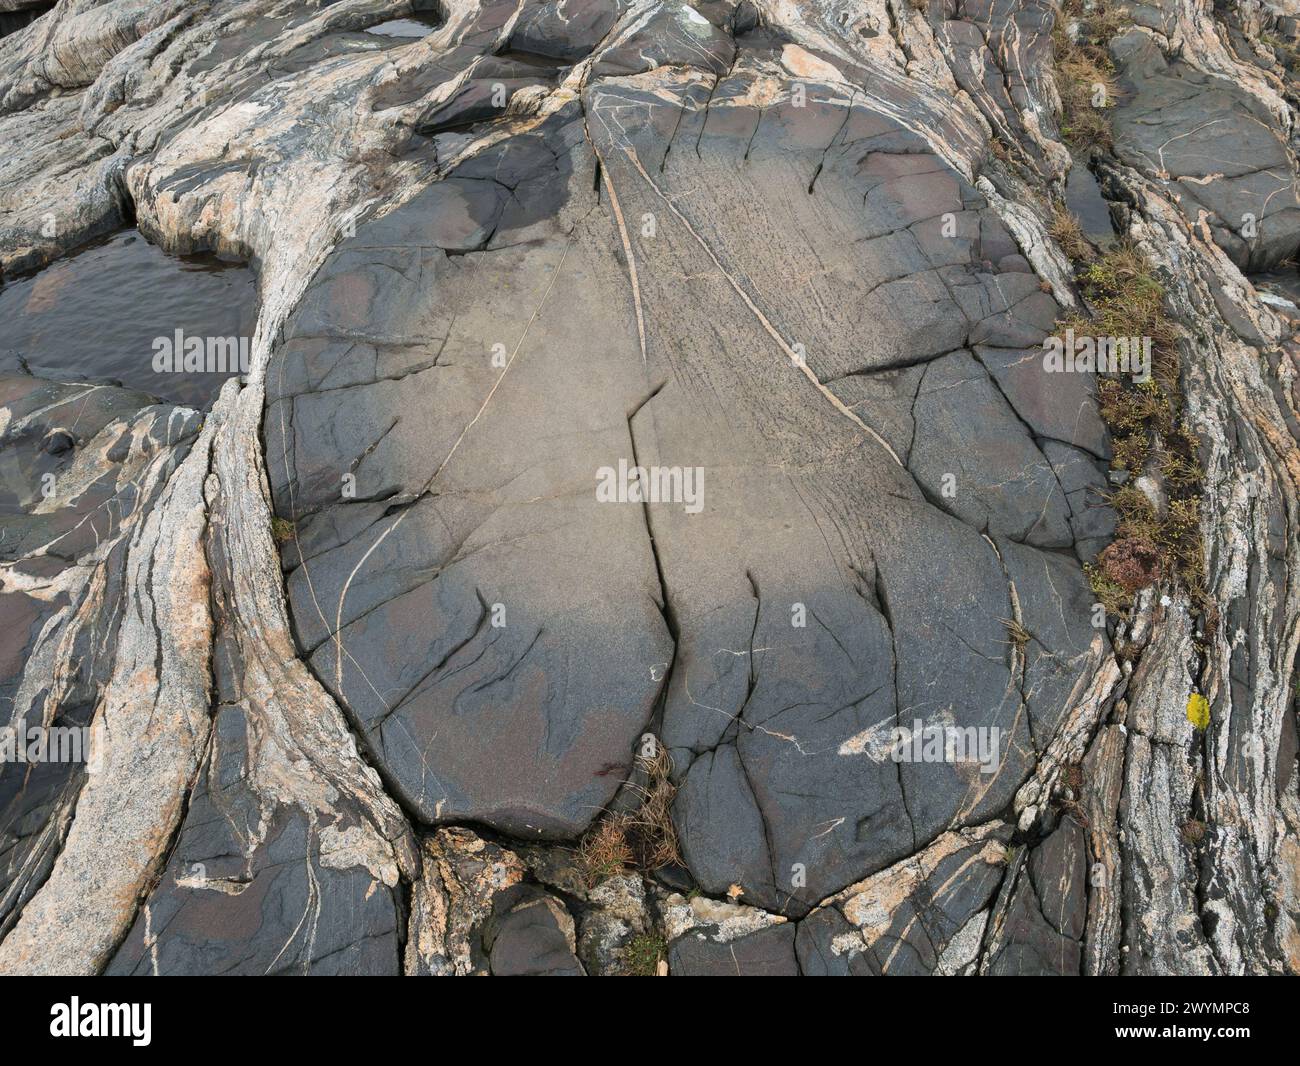 Formazione rocciosa circolare all'interno del granito trovato nella riserva naturale di Ersdalen, sull'isola di Hönö, arcipelago di Gothenburg, Svezia. Foto Stock